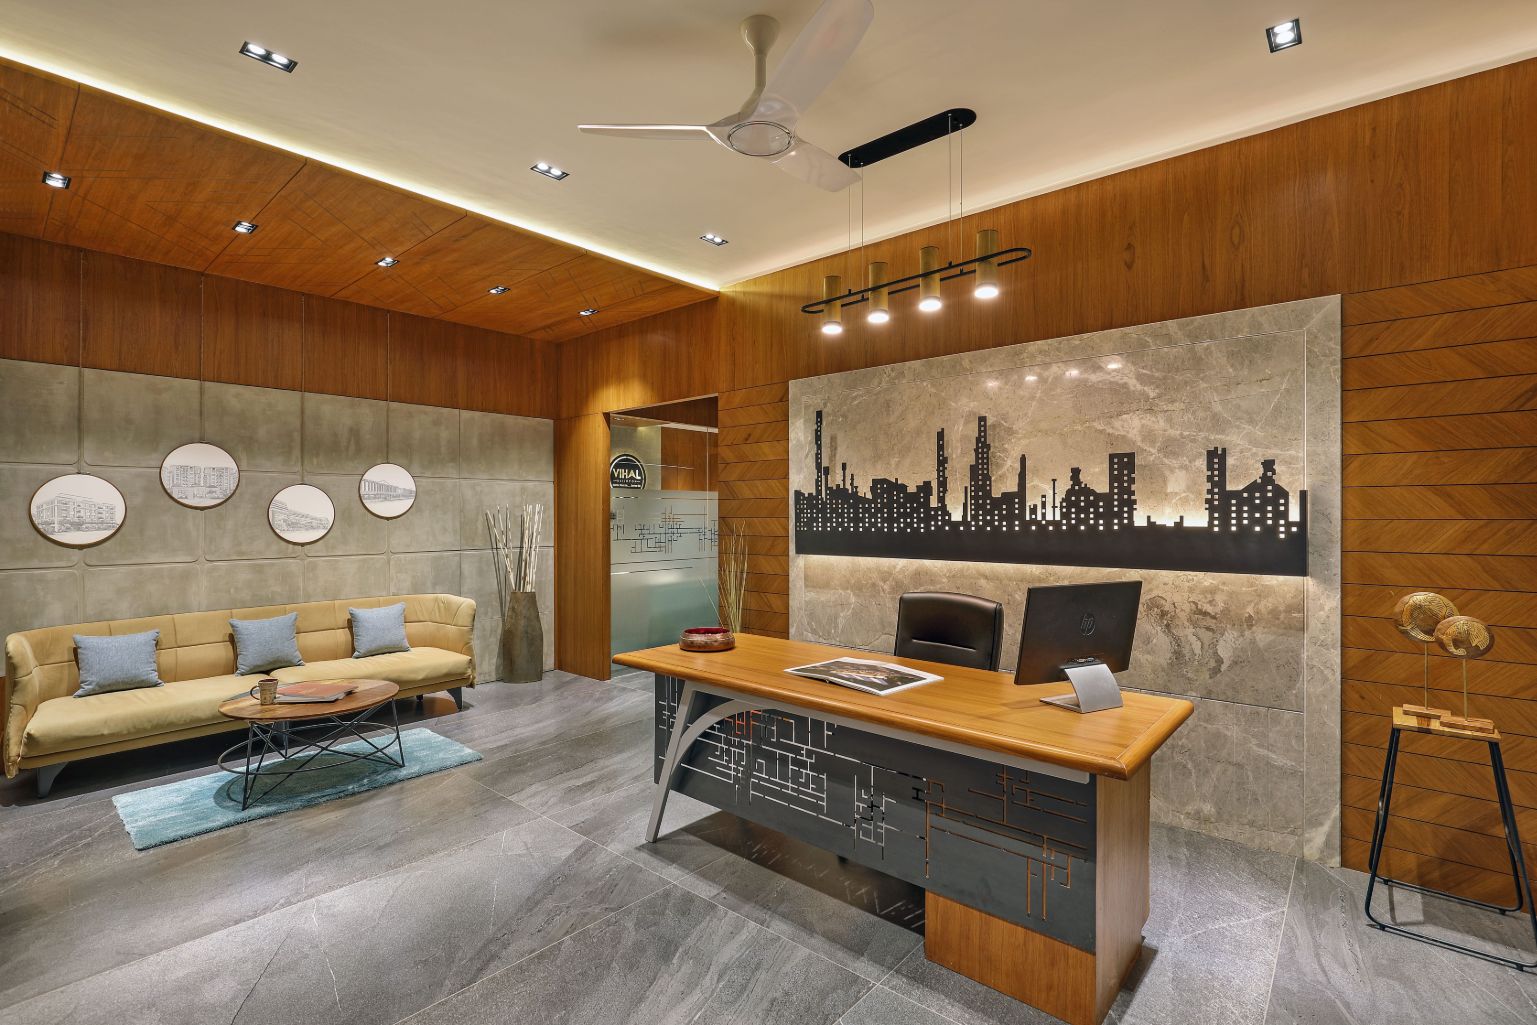 Design Studio Architect & Interiors | Architect and Interiors in India ...